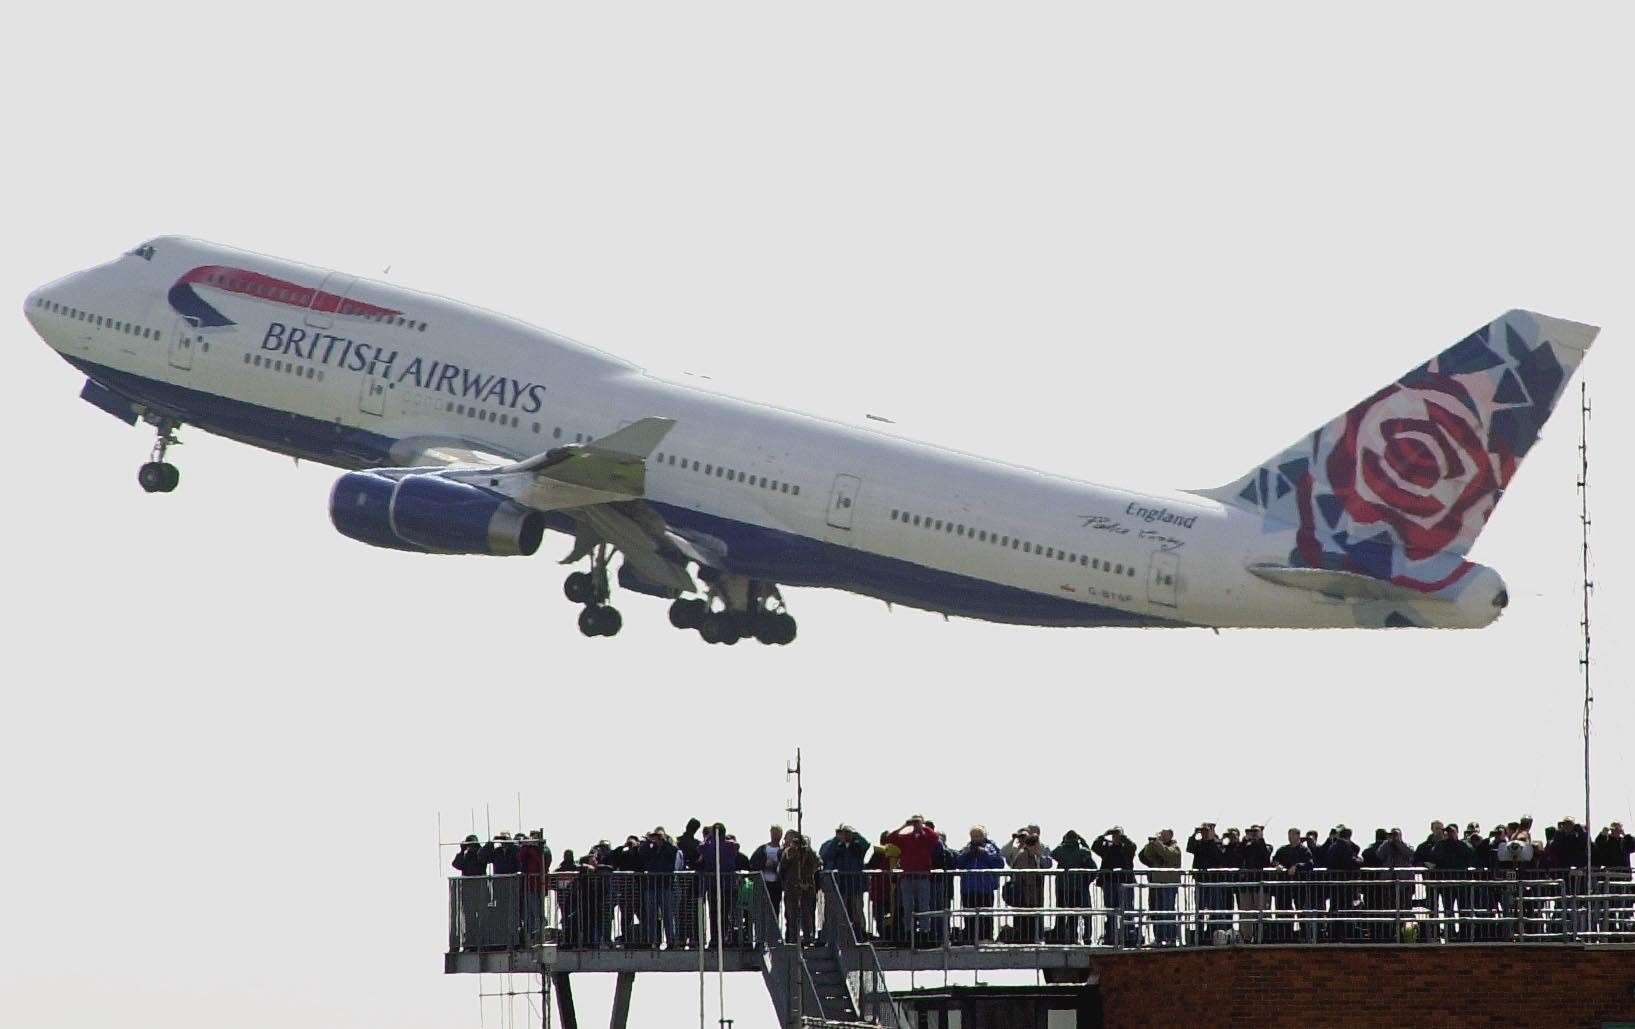 A British Airways Boeing 747 taking off from London’s Heathrow airport in 2001 (Tim Ockenden/PA)